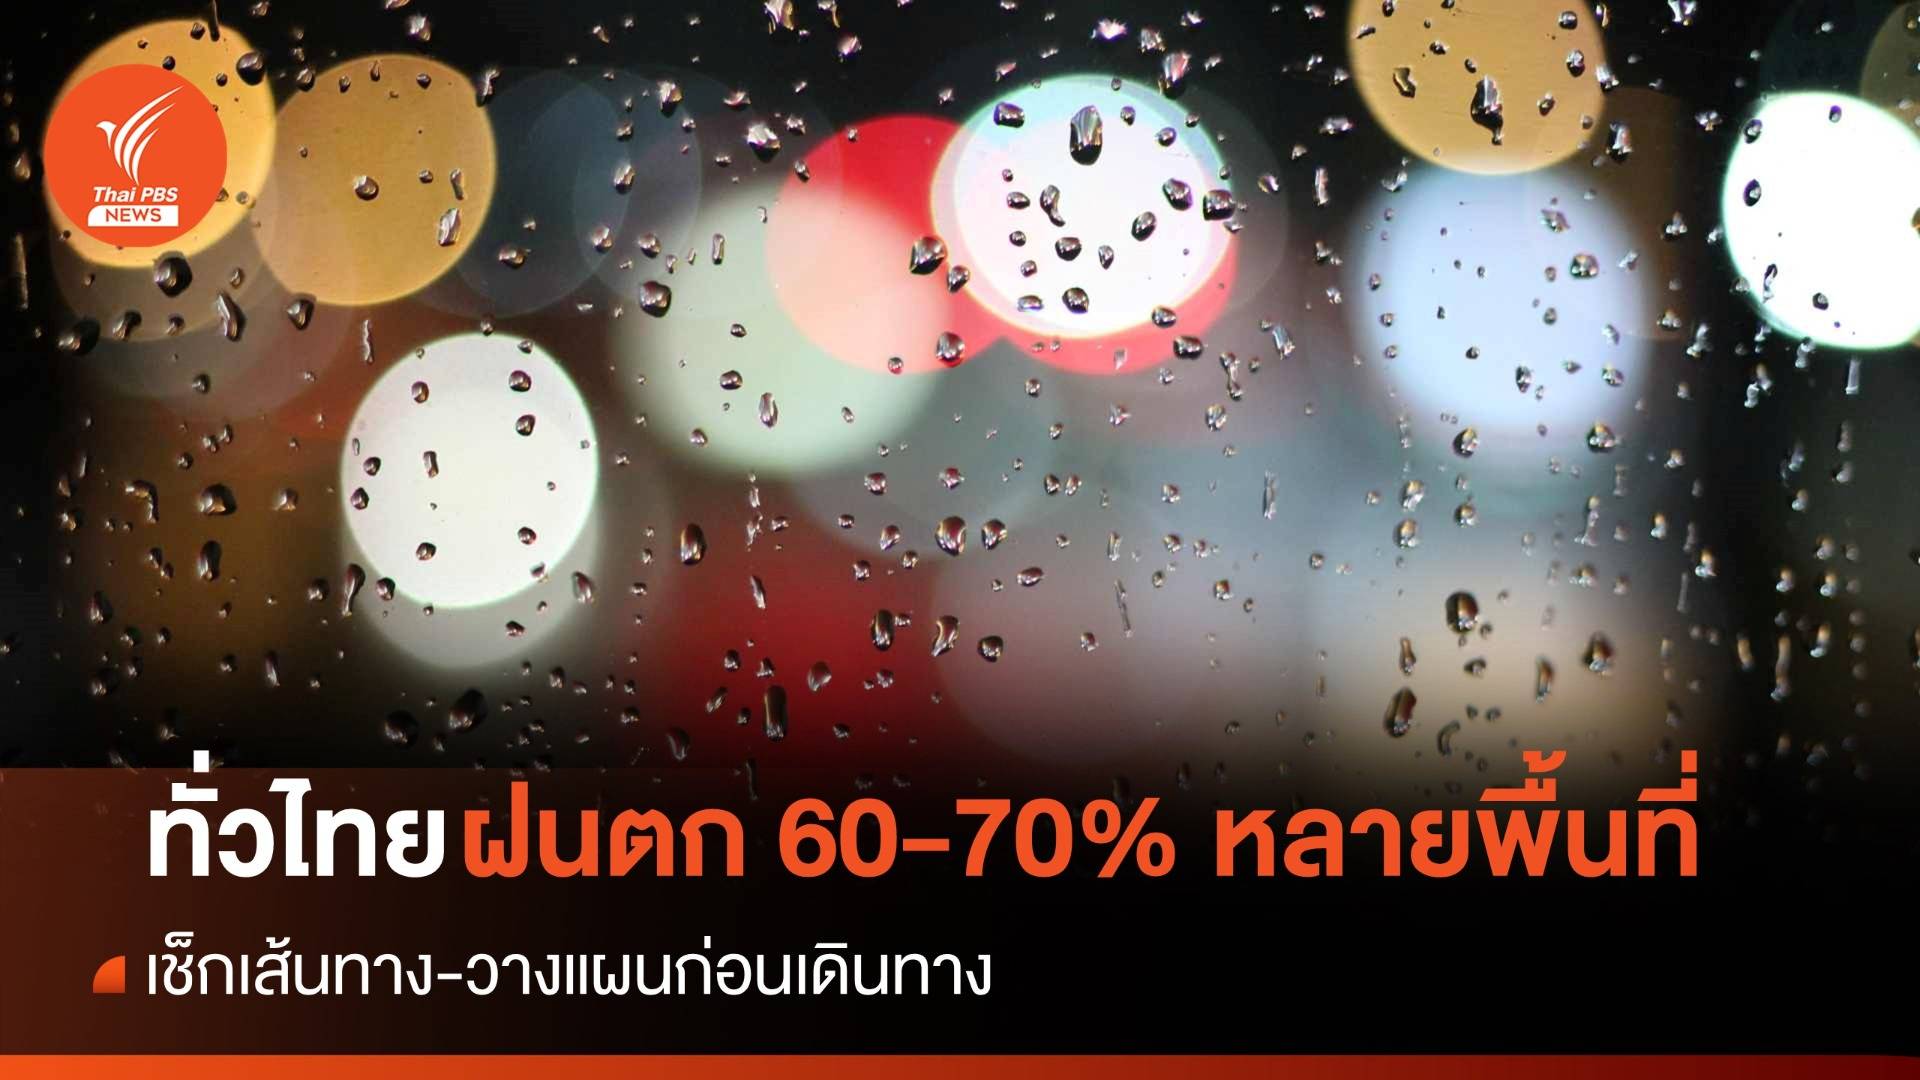 สภาพอากาศวันนี้ ทั่วไทยฝนตก 60-70% ของพื้นที่-ใต้คลื่นลมสงบ